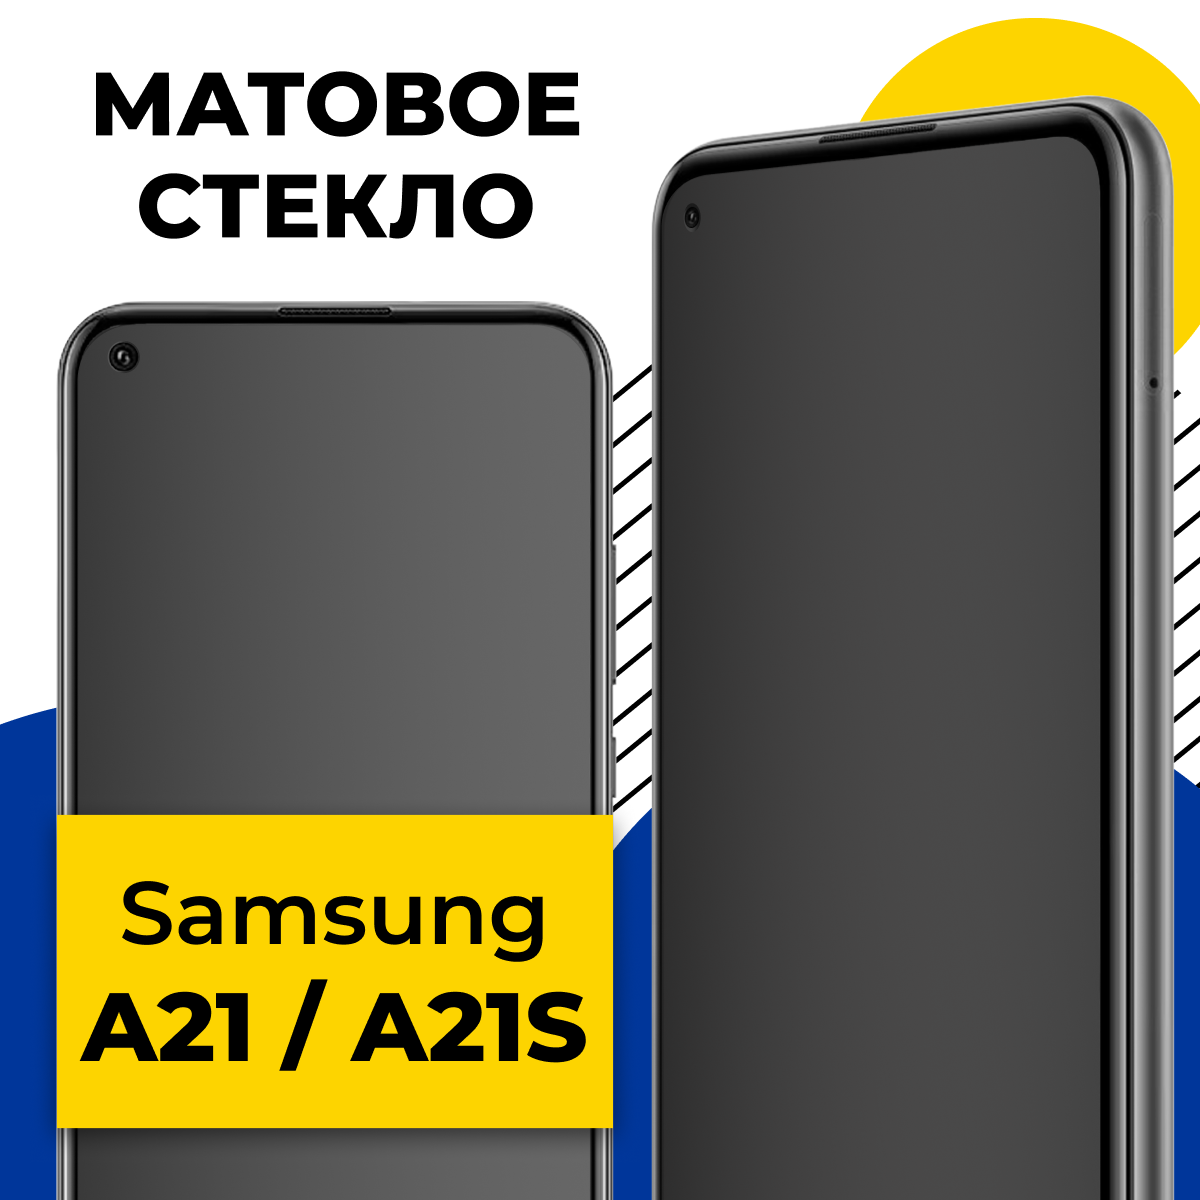 Матовое защитное стекло для телефона Samsung Galaxy A21S и A21 / Противоударное стекло на смартфон Самсунг Галакси А21С и А21 с олеофобным покрытием